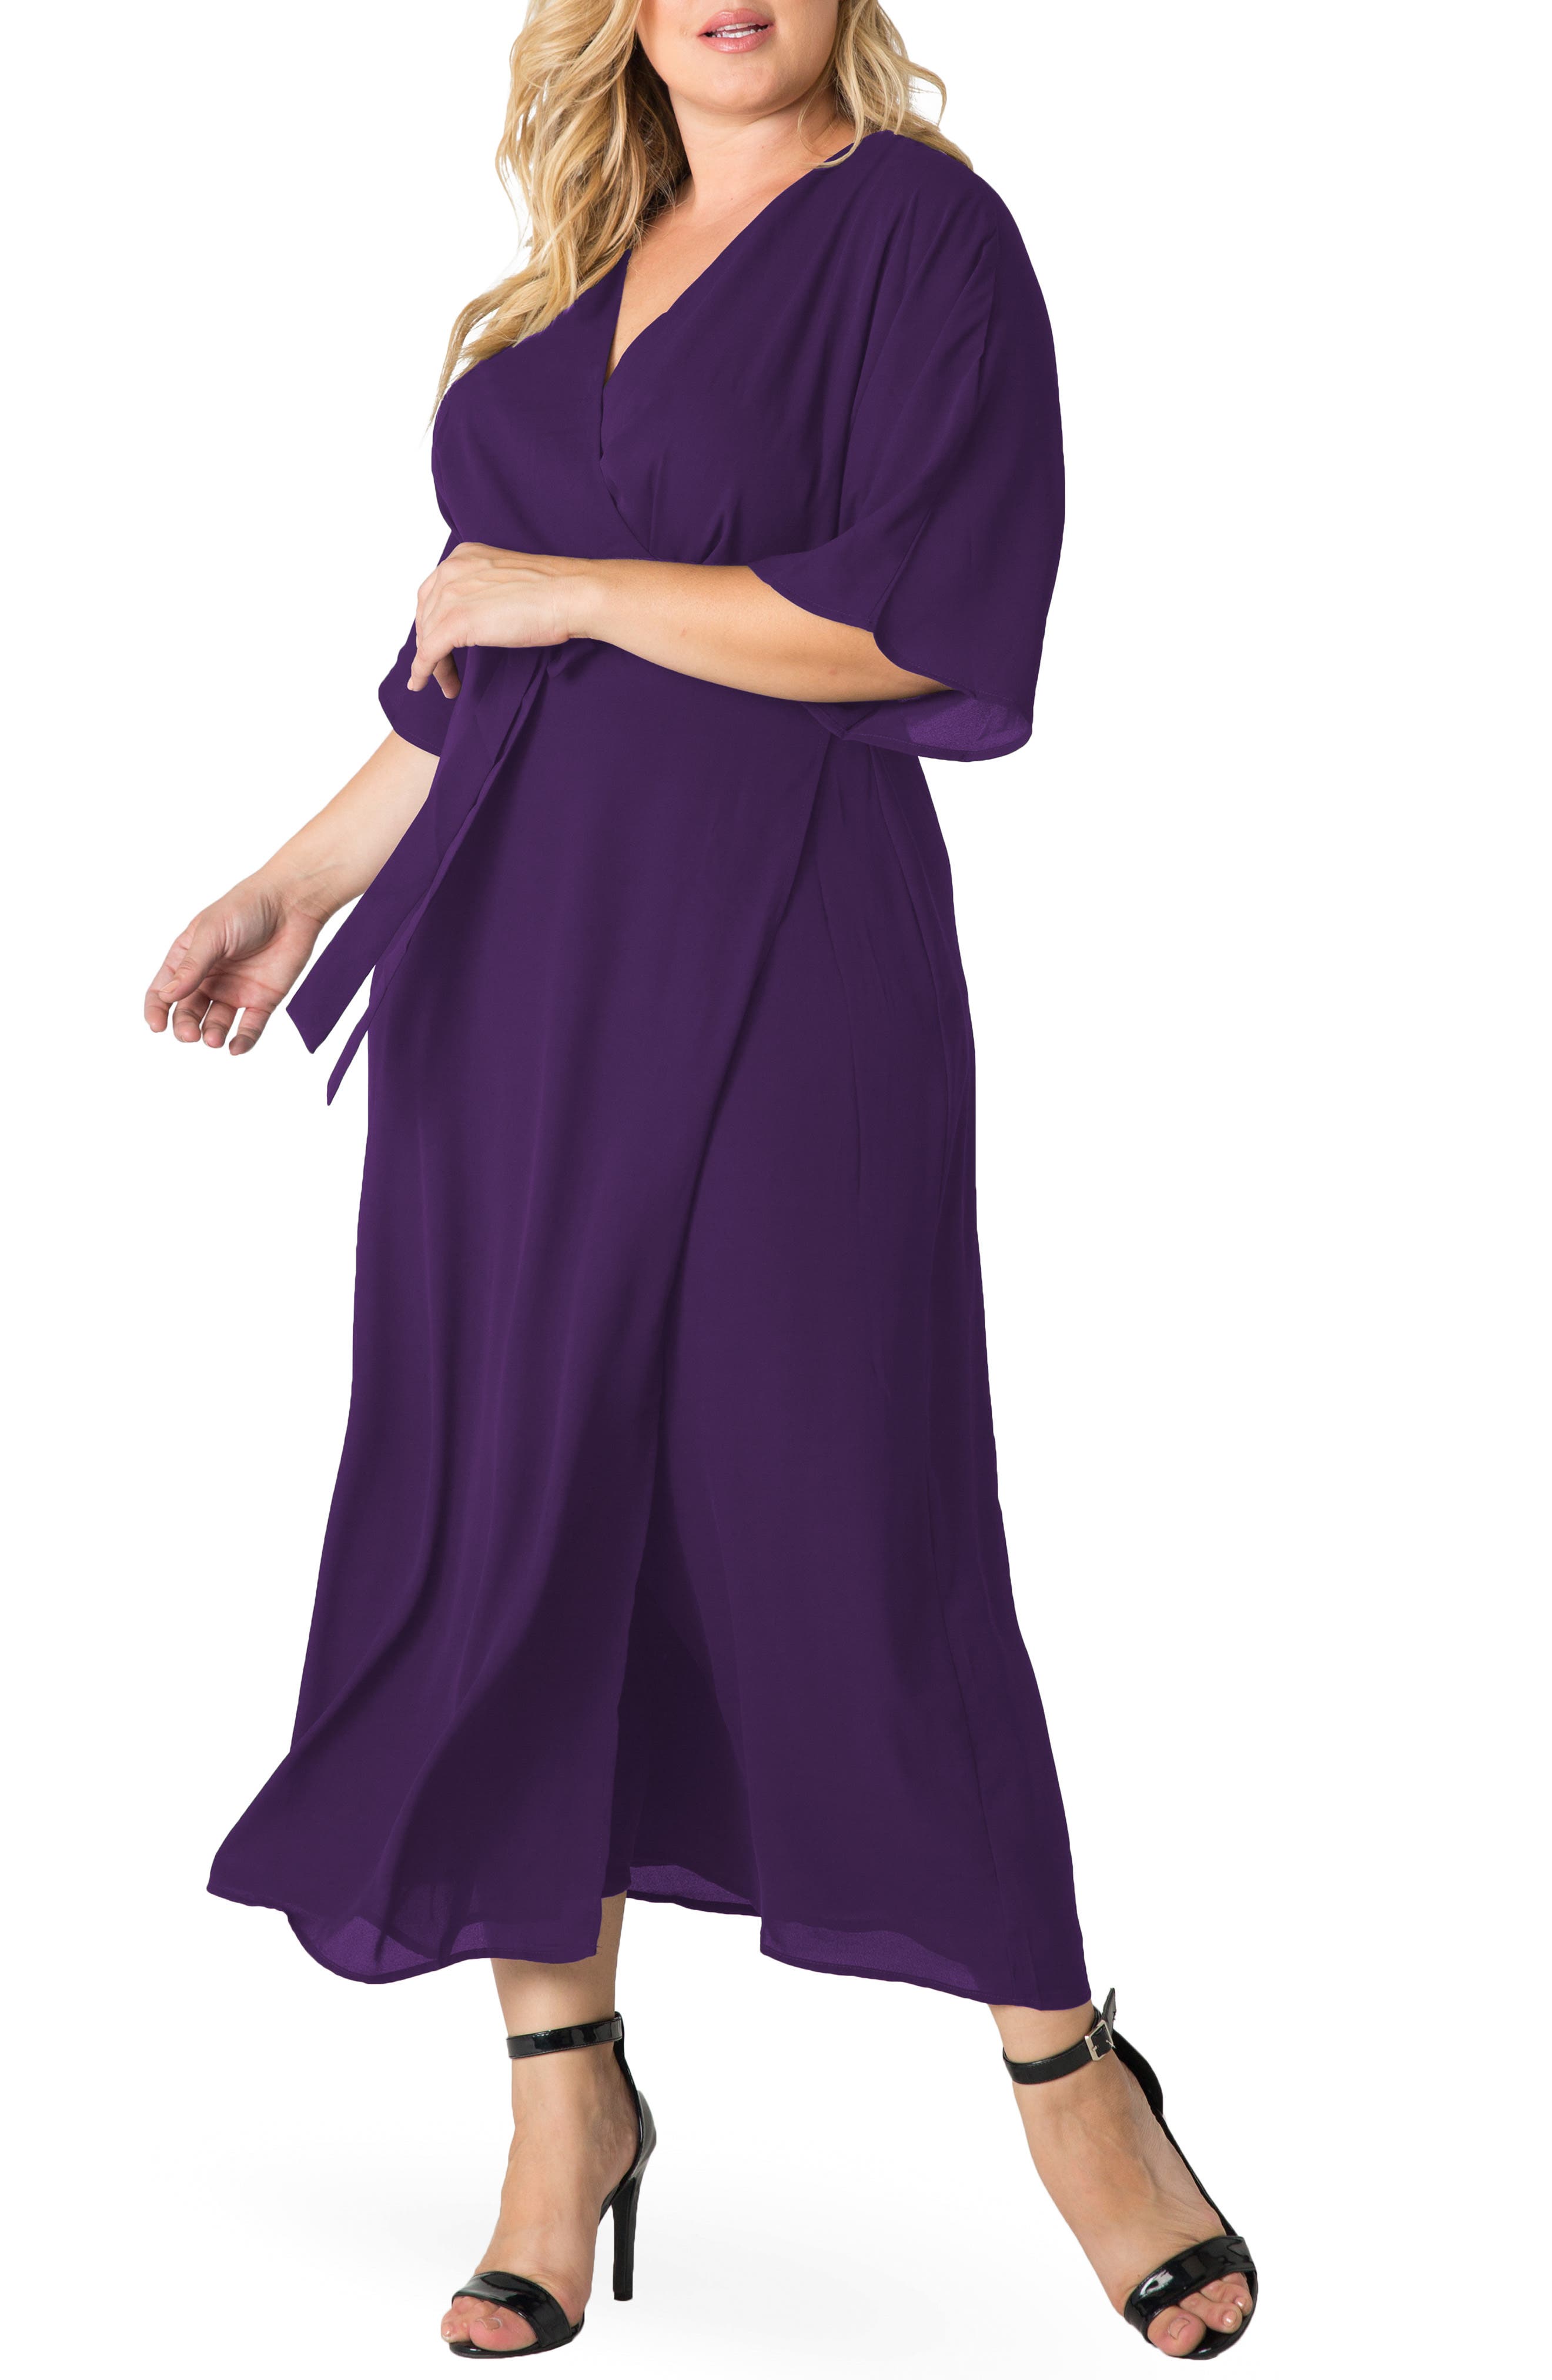 Purple Plus Size Dresses for Women ...